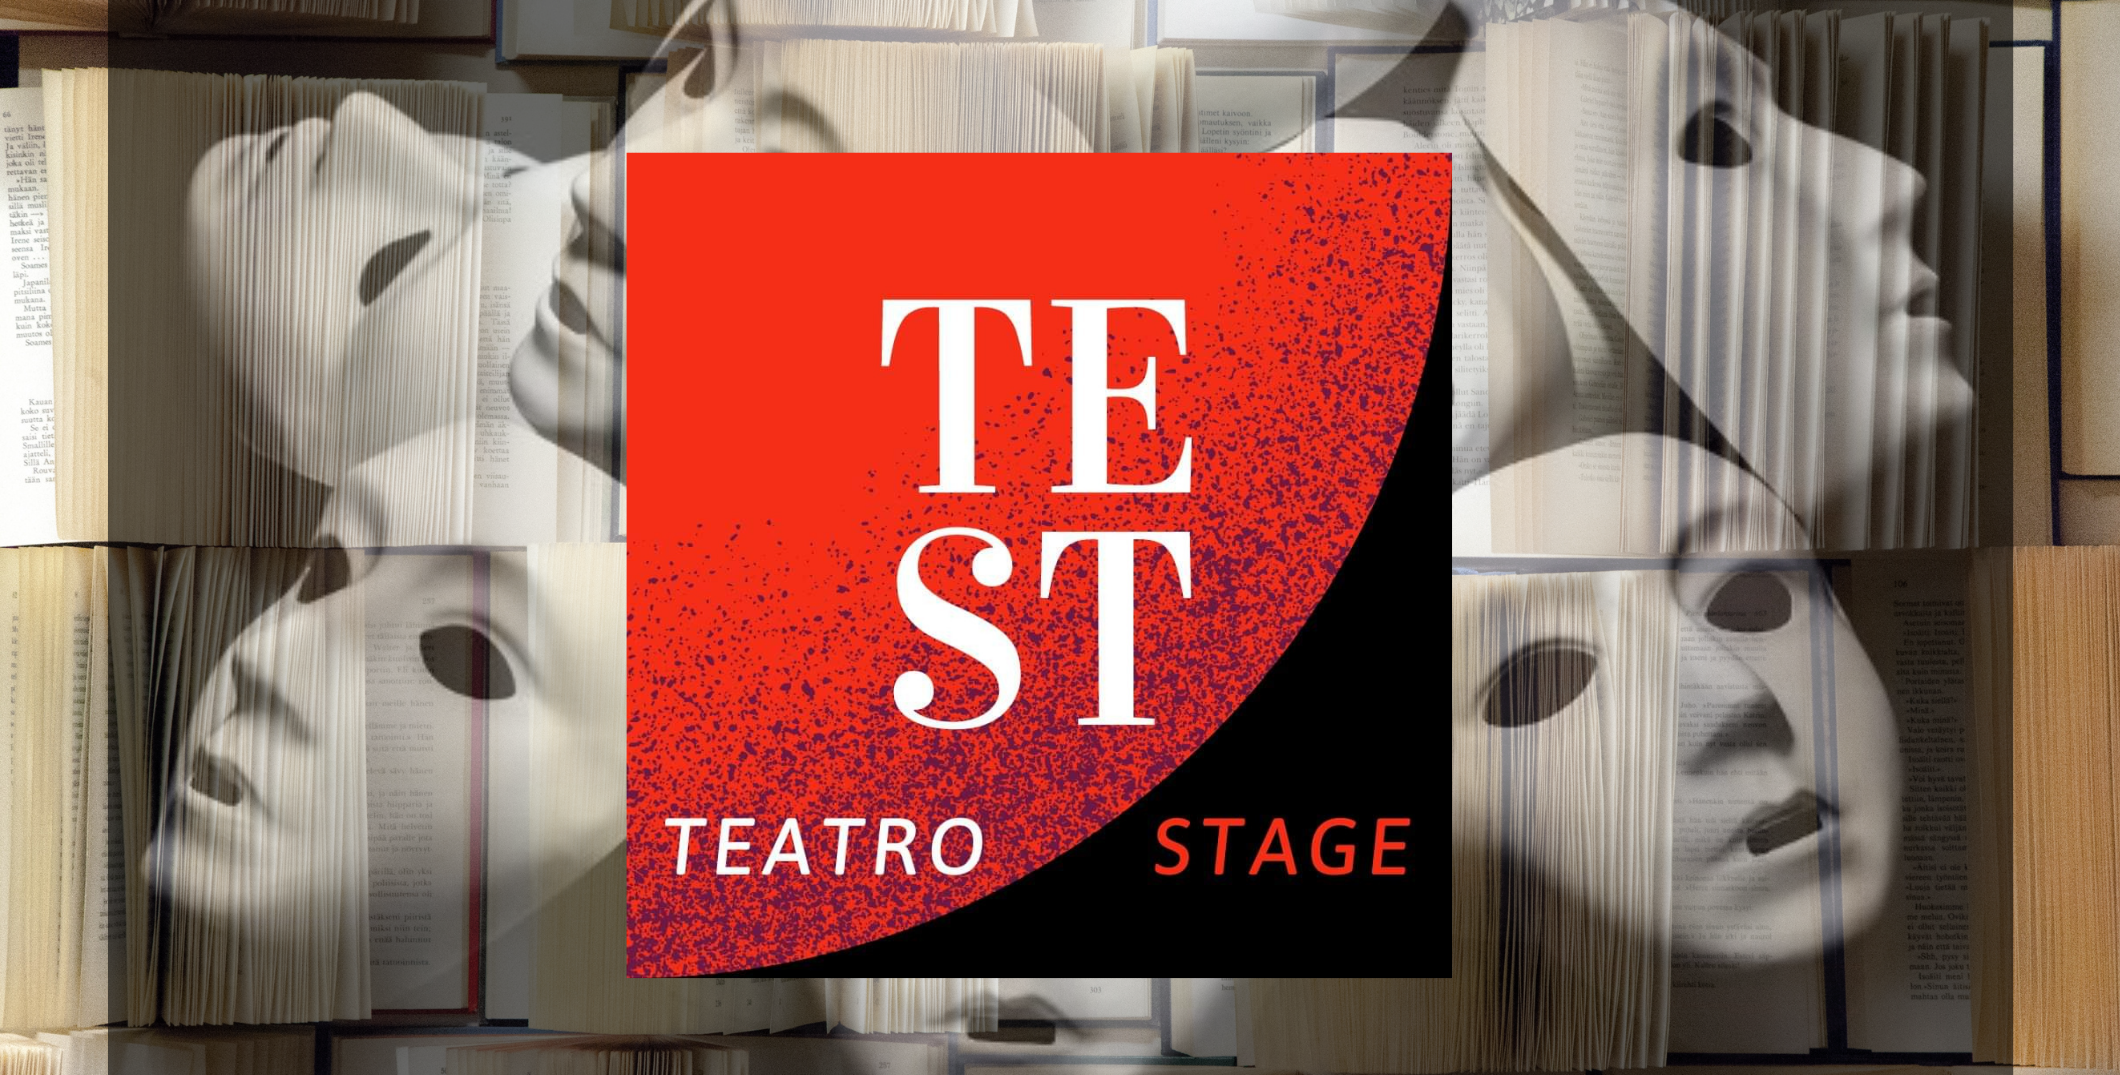 Test-TeatroStage, il 29 settembre la presentazione dei nuovi corsi di teatro